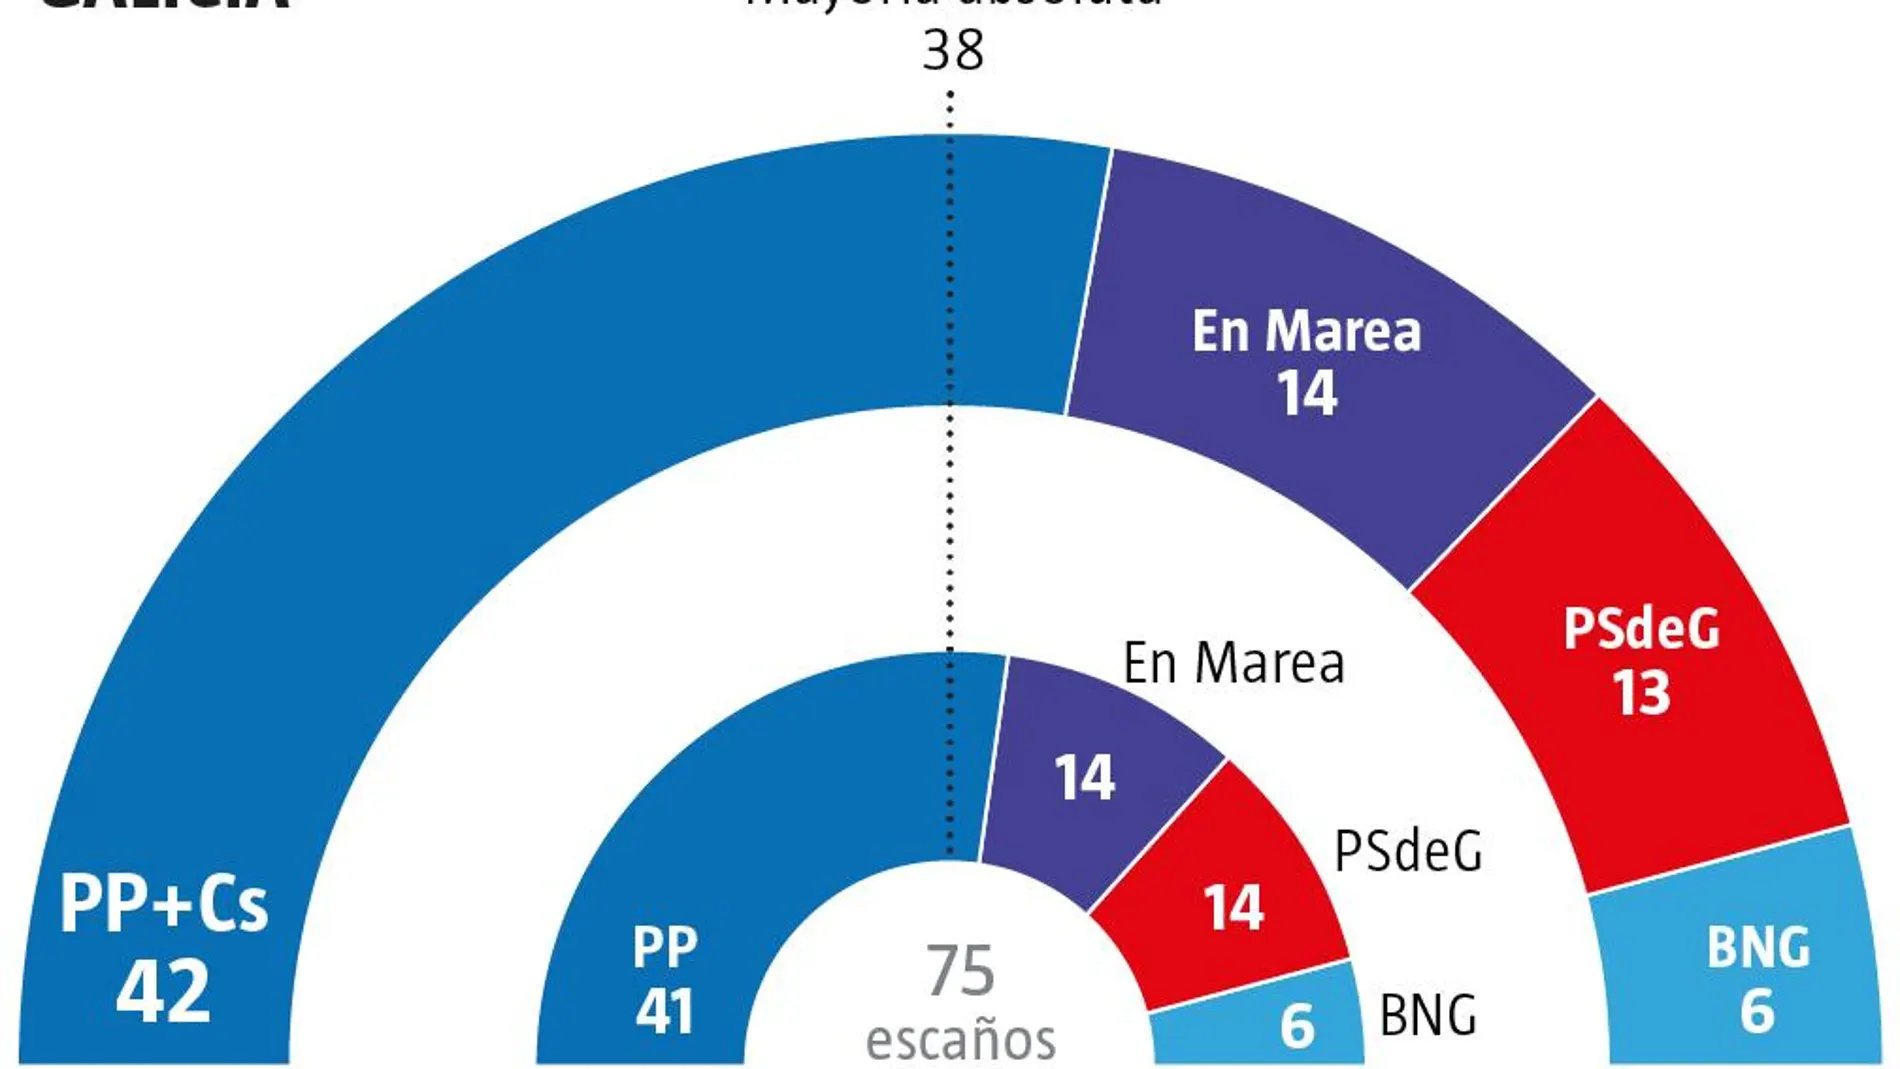 ¿Qué pasaría si PP y Cs sumaran sus votos en Galicia y País Vasco?